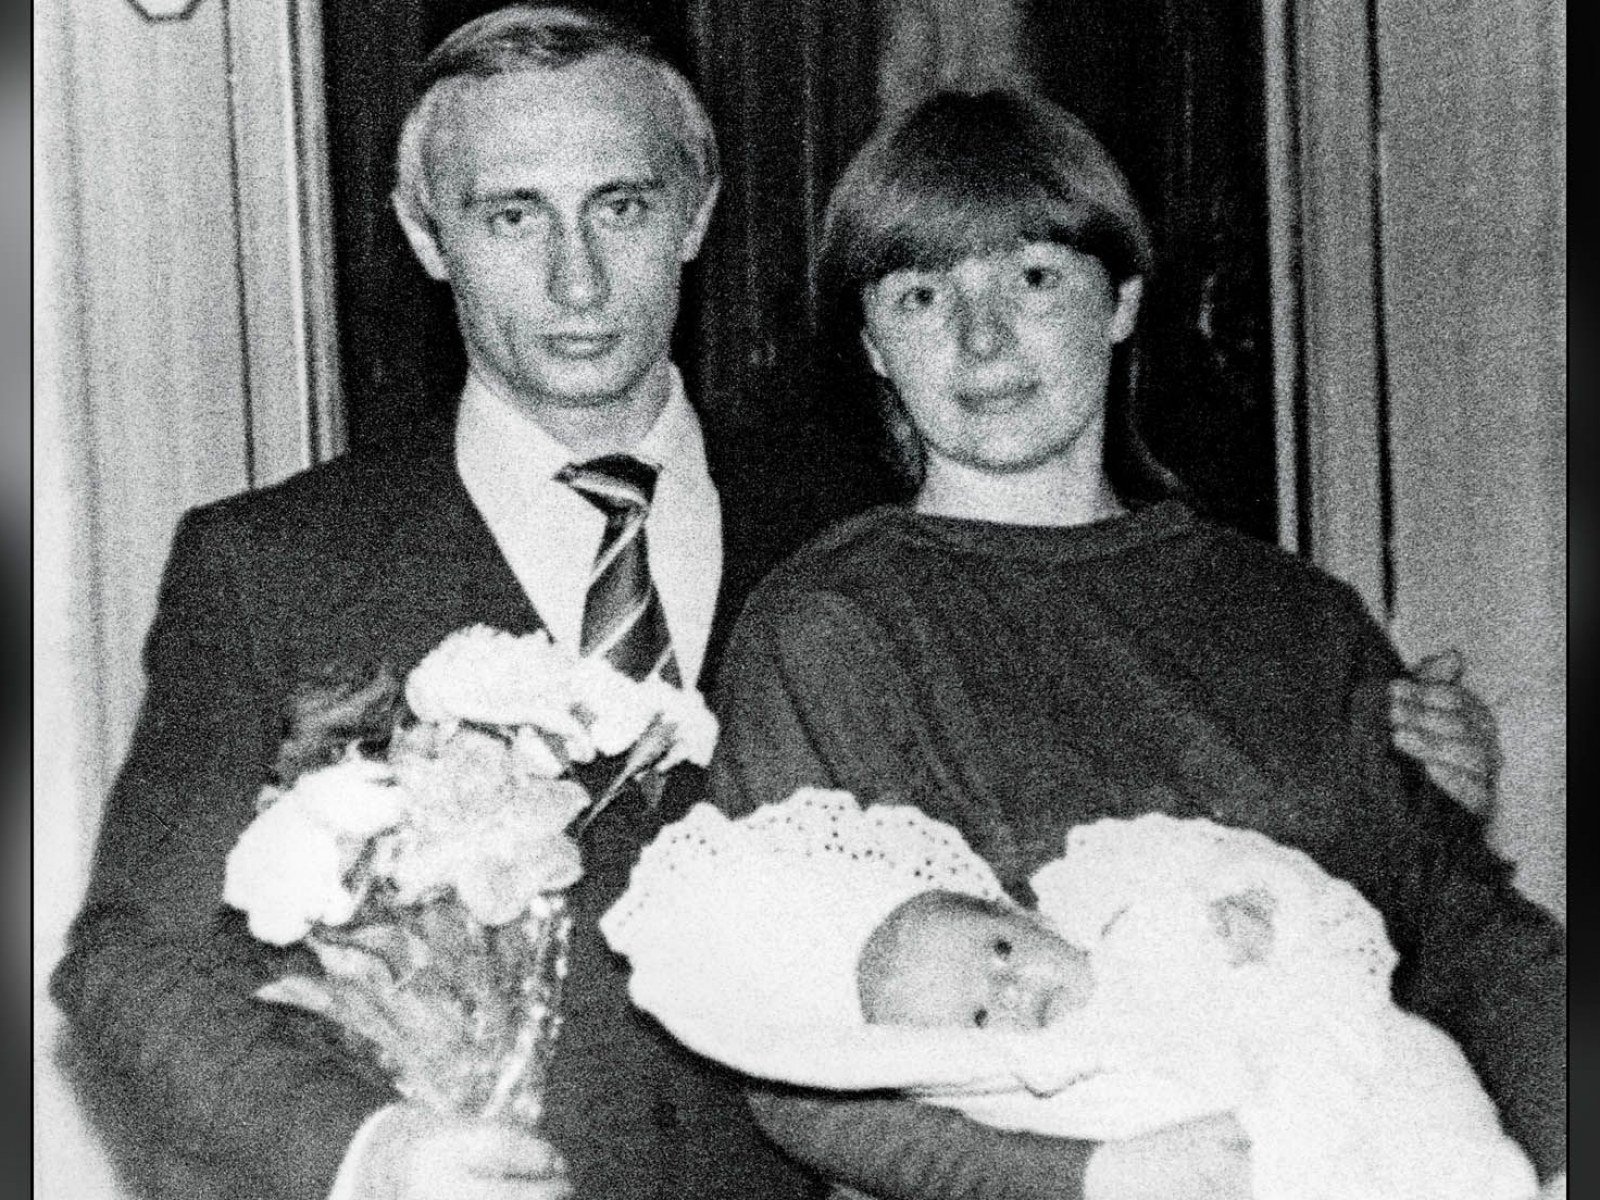  Viața lui Putin: La 12 ani era descris ca fiind un copil problemă